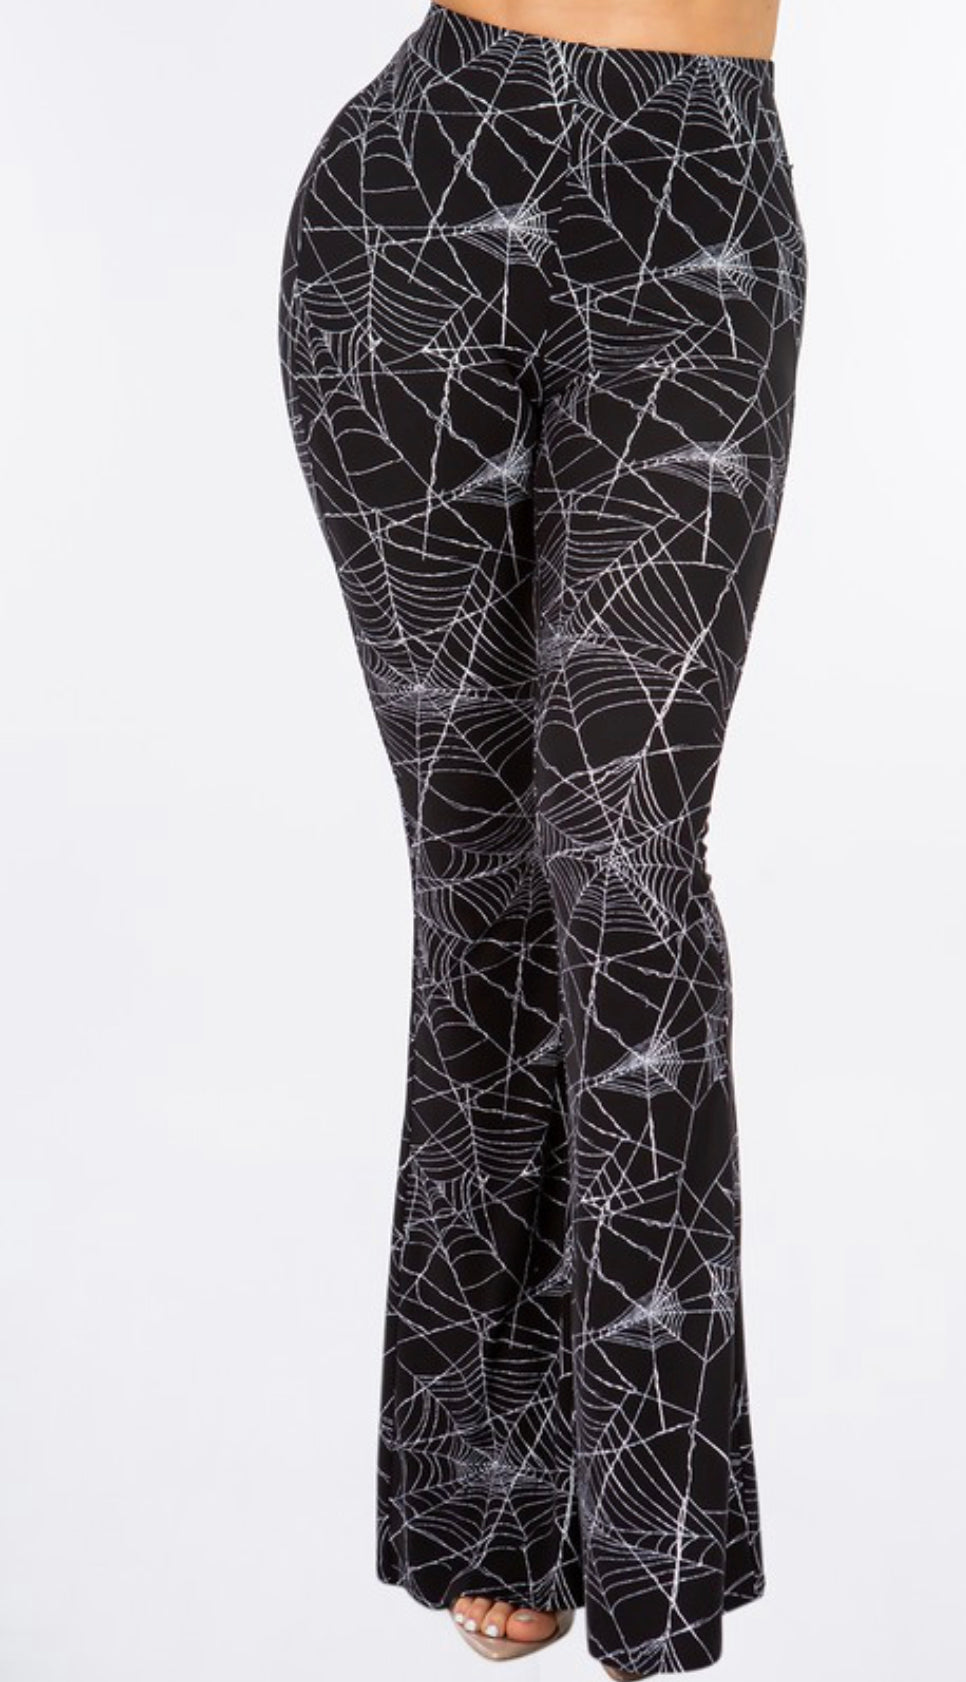 Black and White Spiderweb Print Bell Bottom Leggings